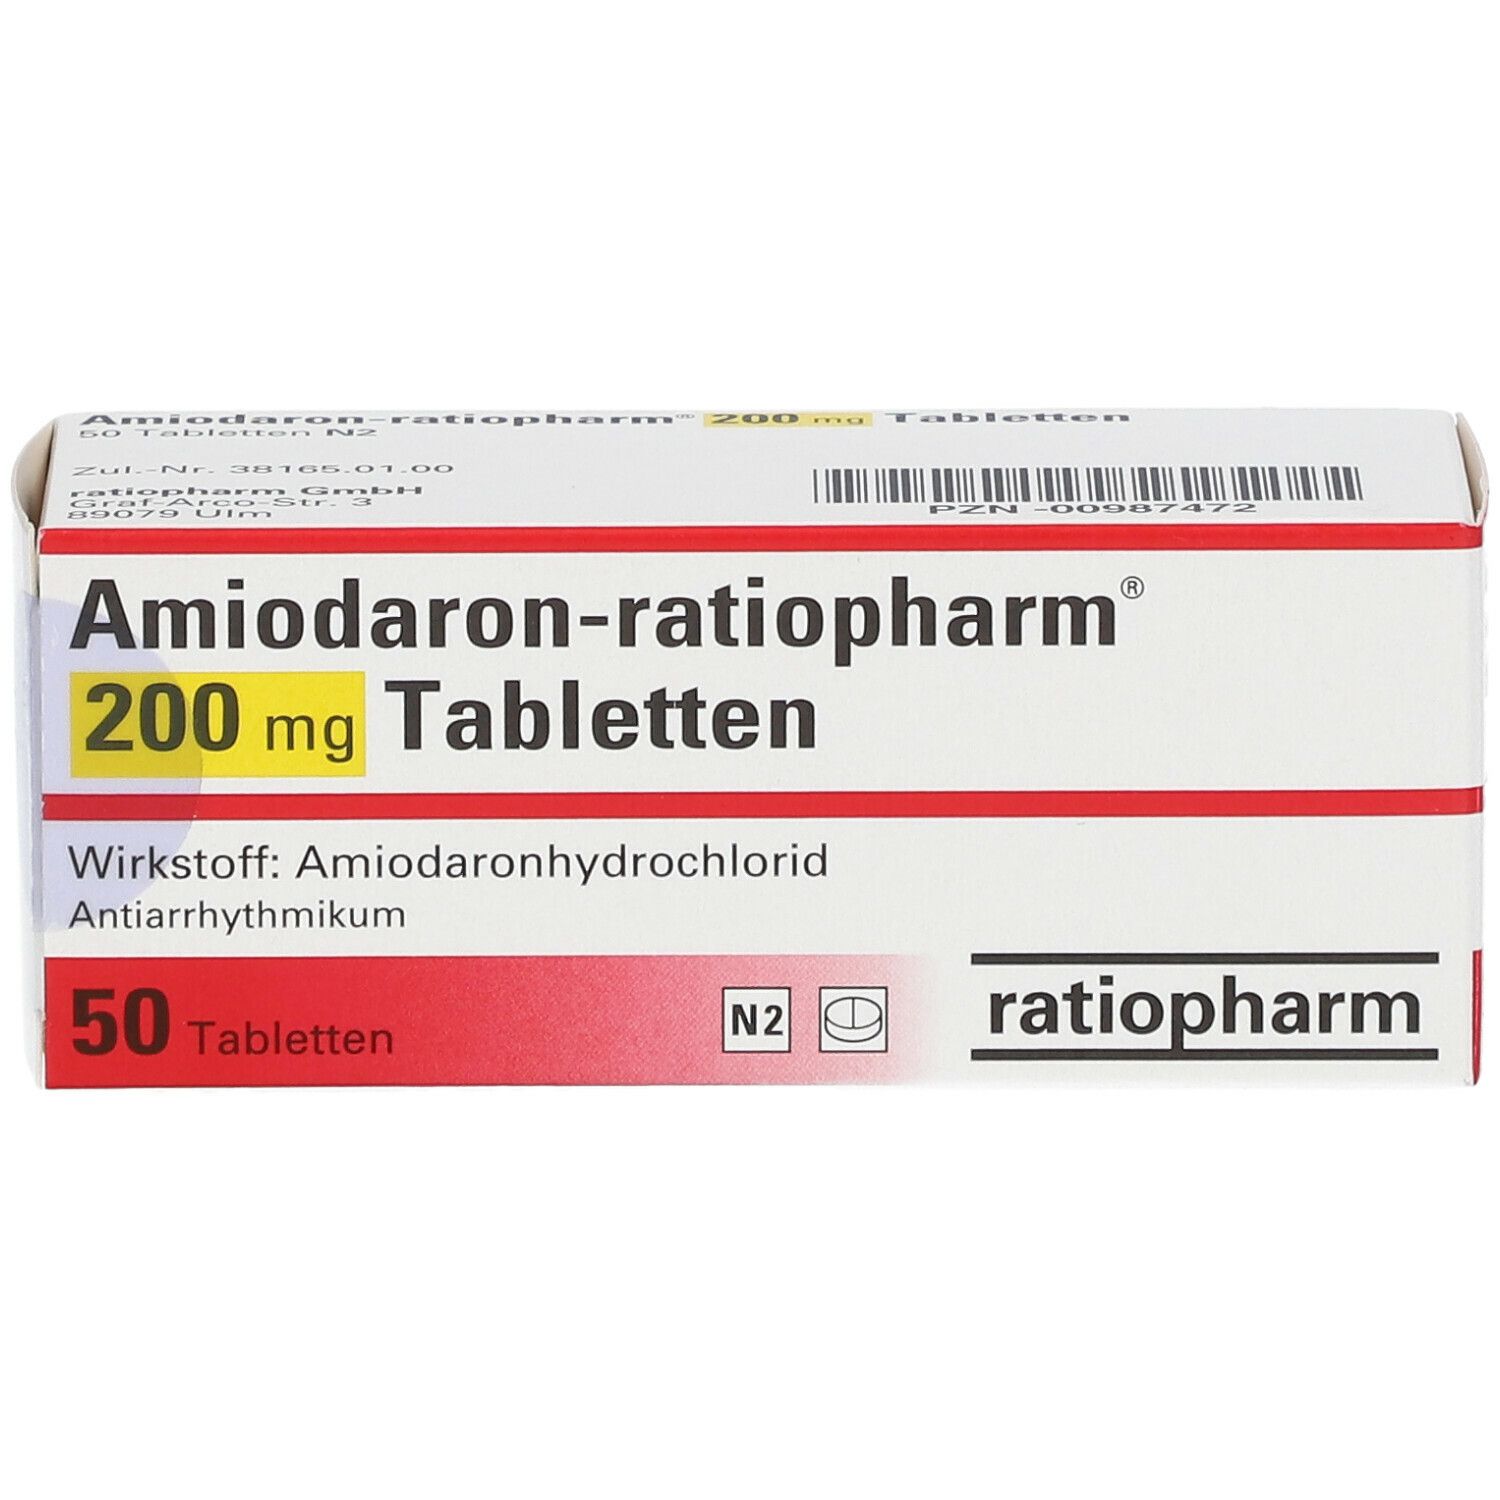 Amiodaron-ratiopharm® 200 mg